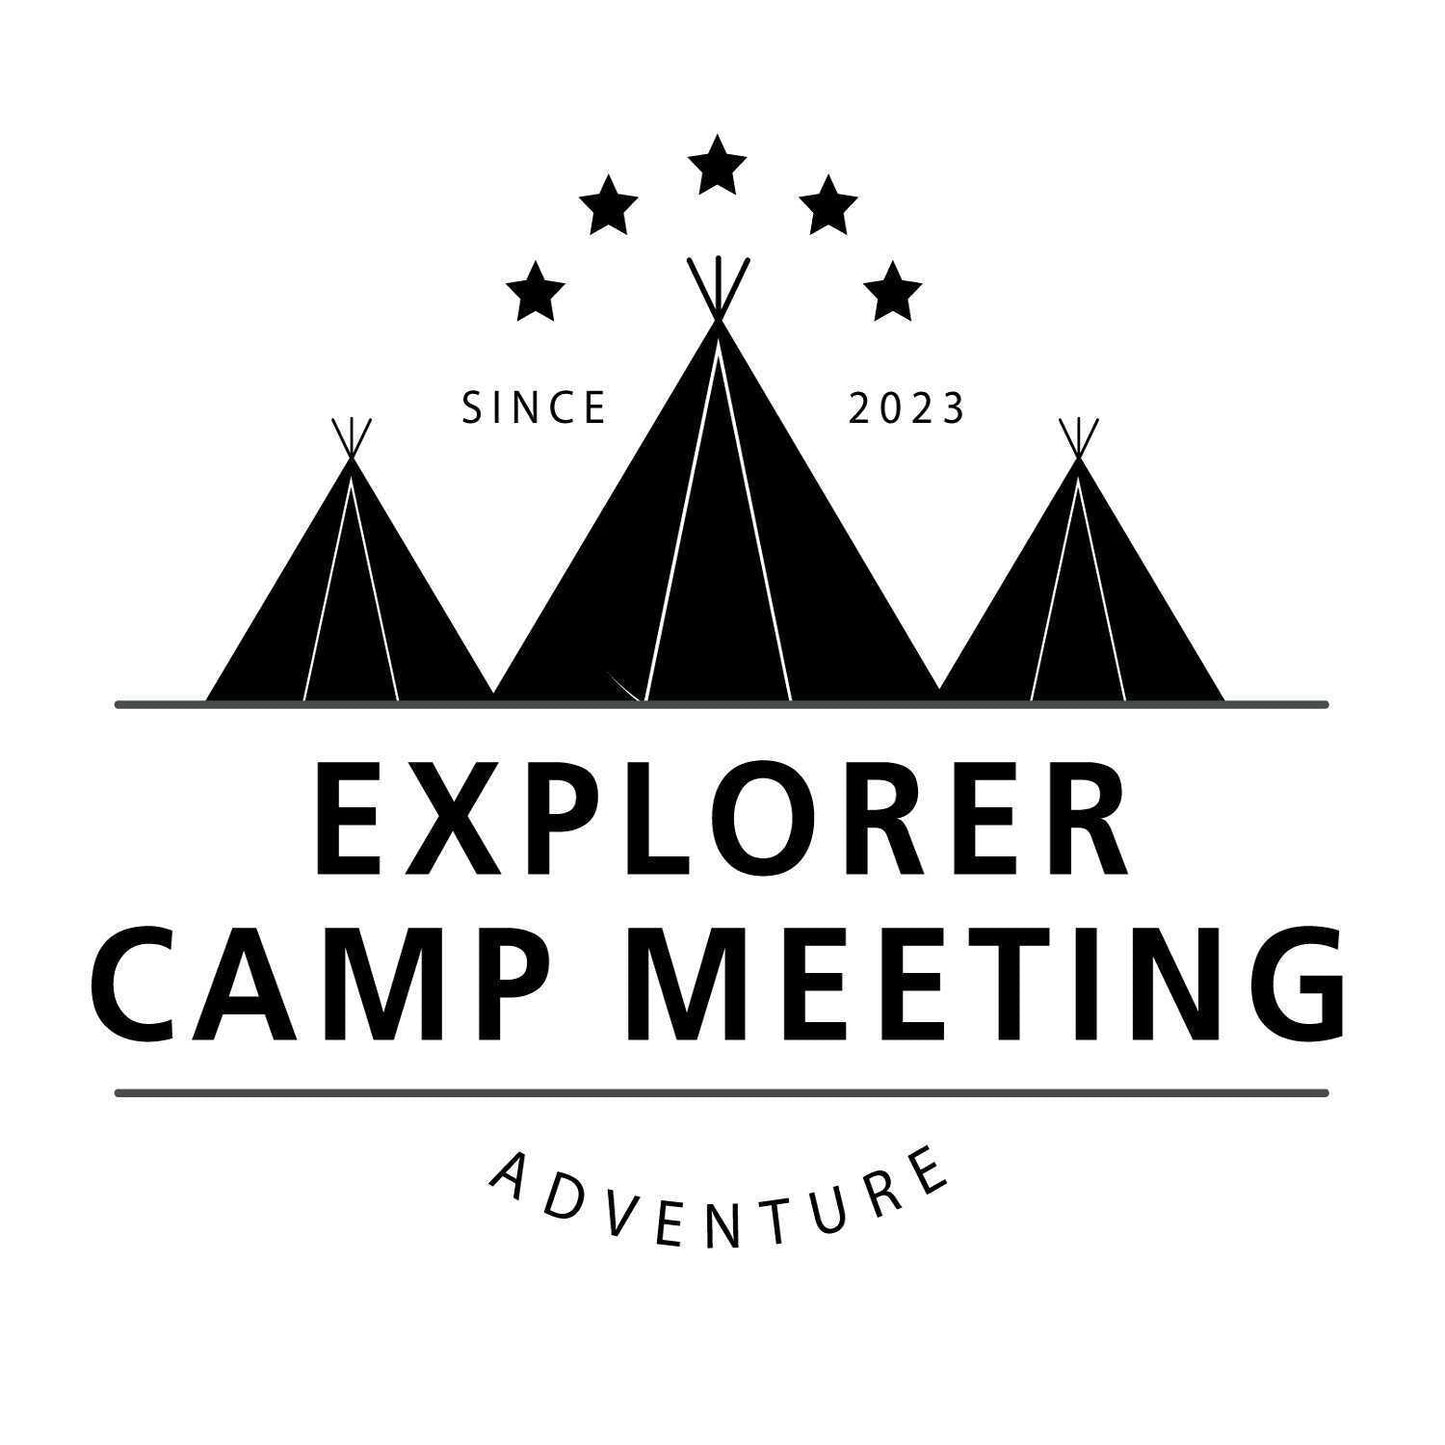 【8/5(土)-8/6(日)開催イベント】EXPLORER CAMP MEETING@エクスプローラーパーク